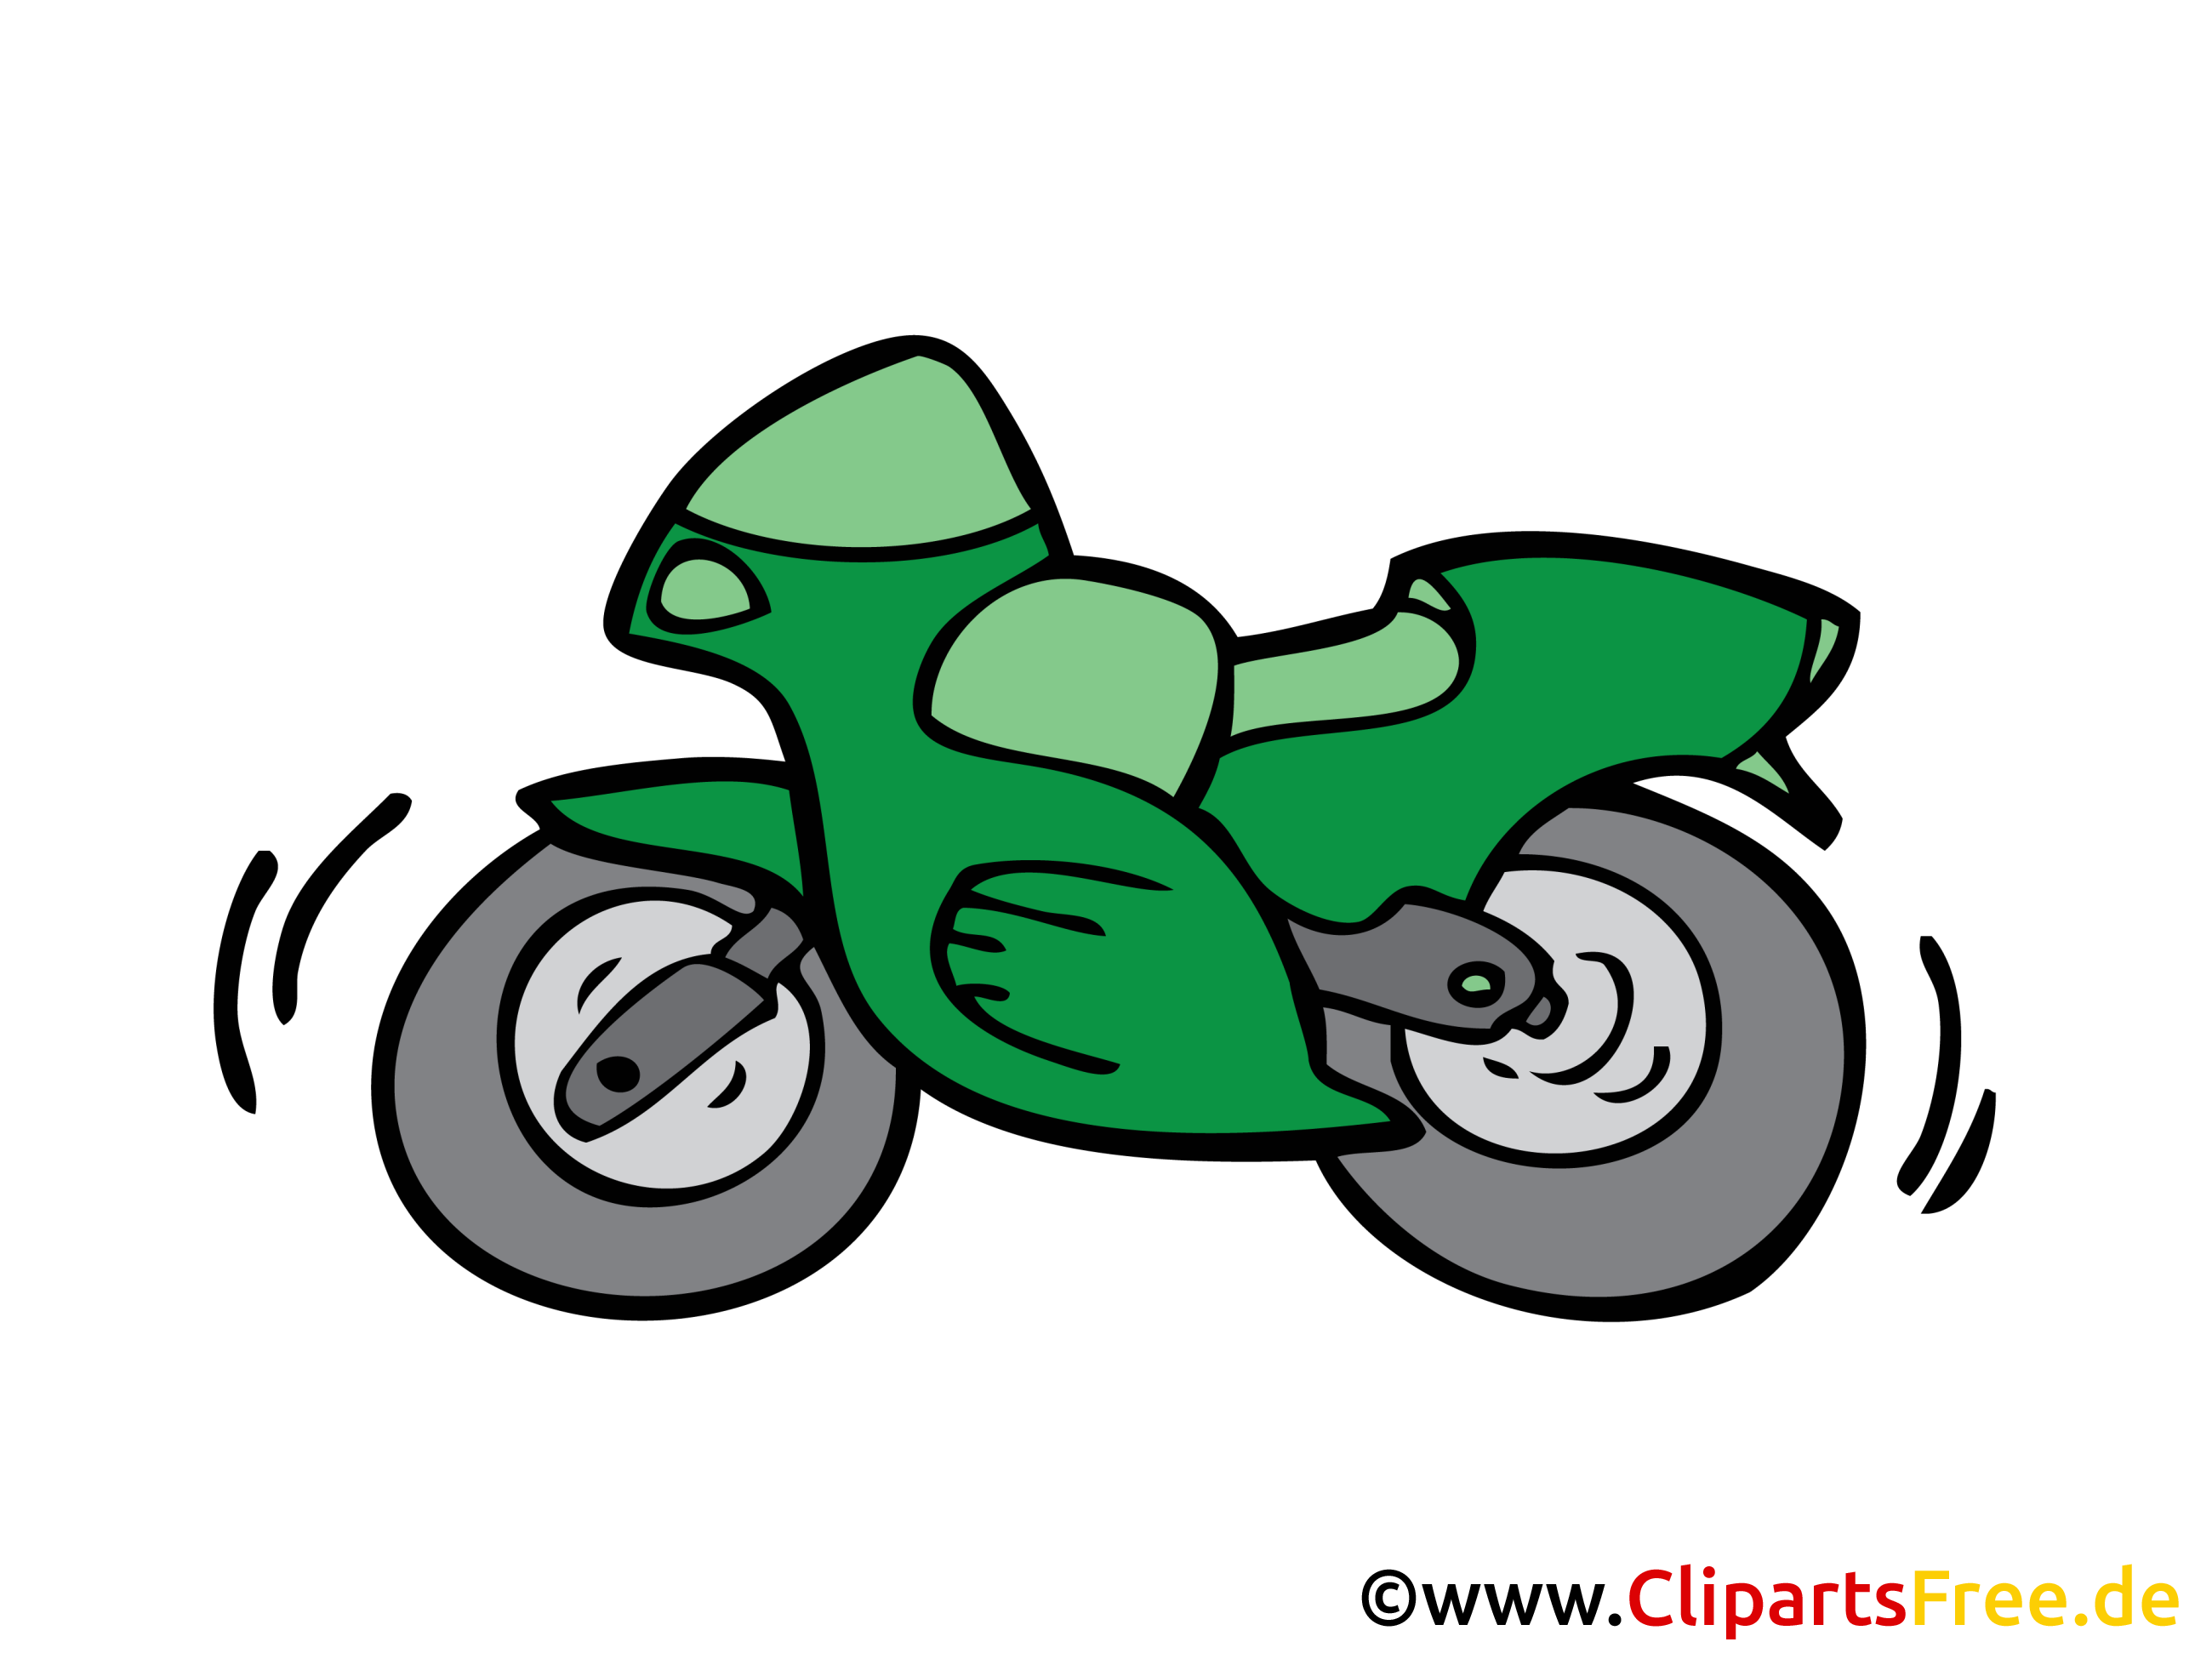 Motocycle dessins gratuits clipart gratuit